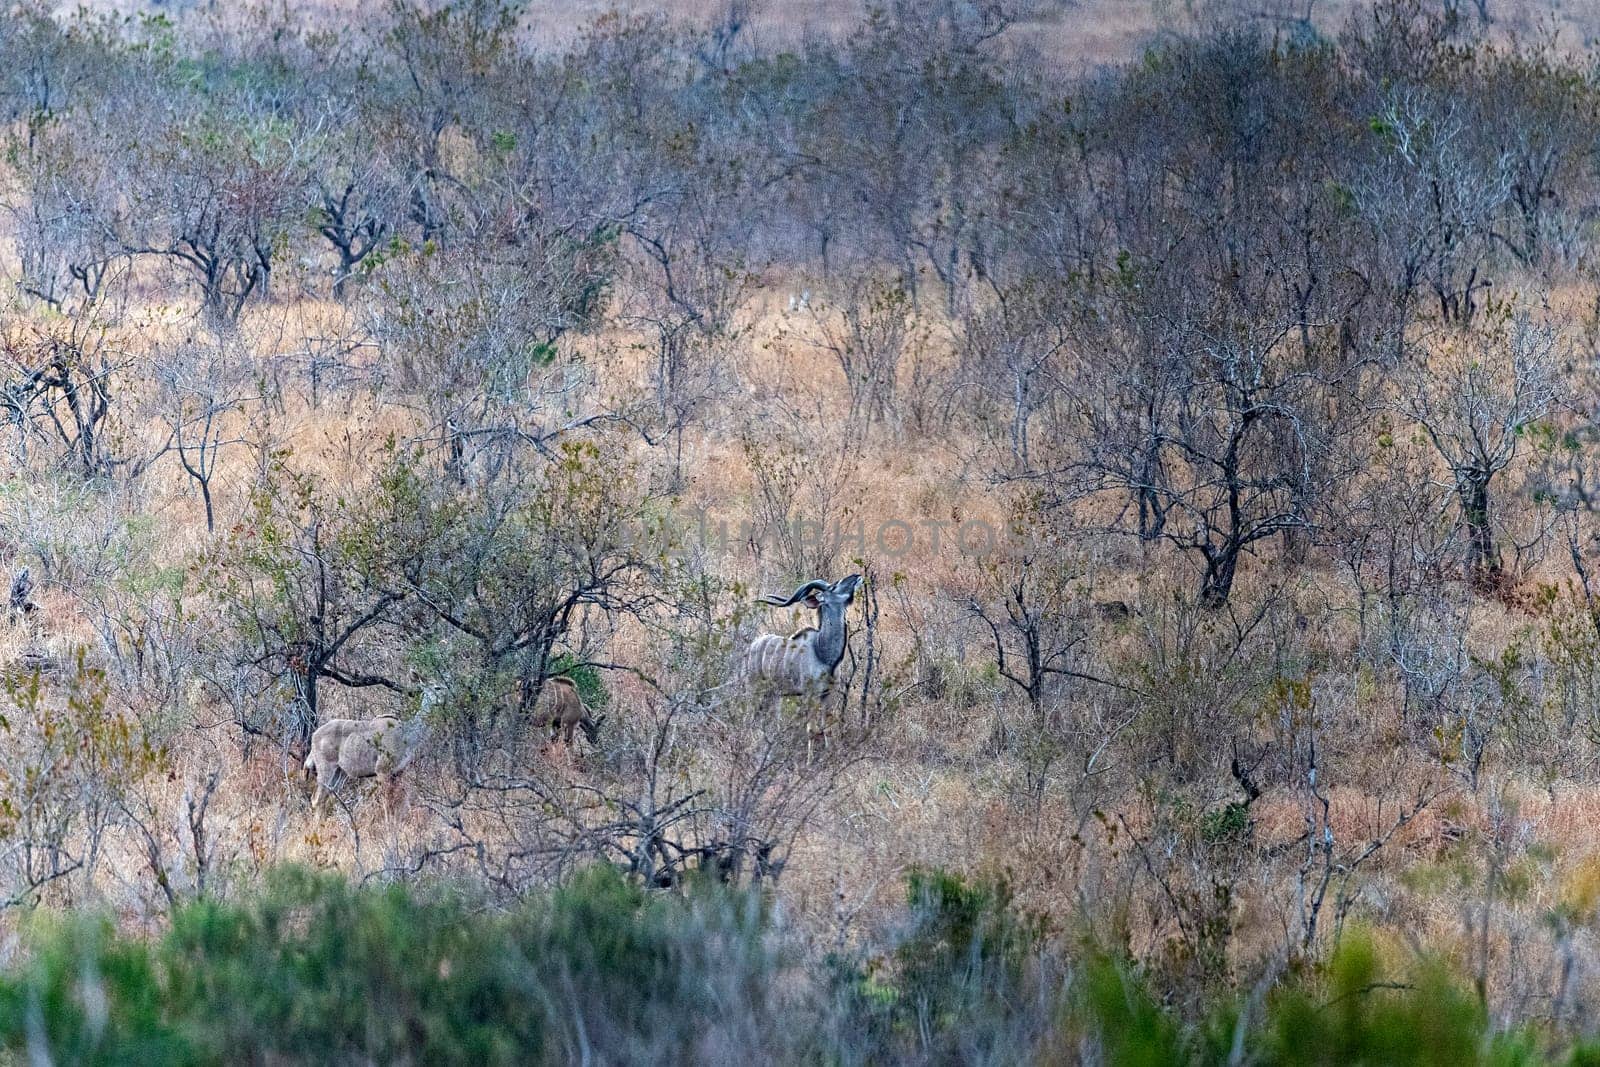 Kudu in kruger park south africa